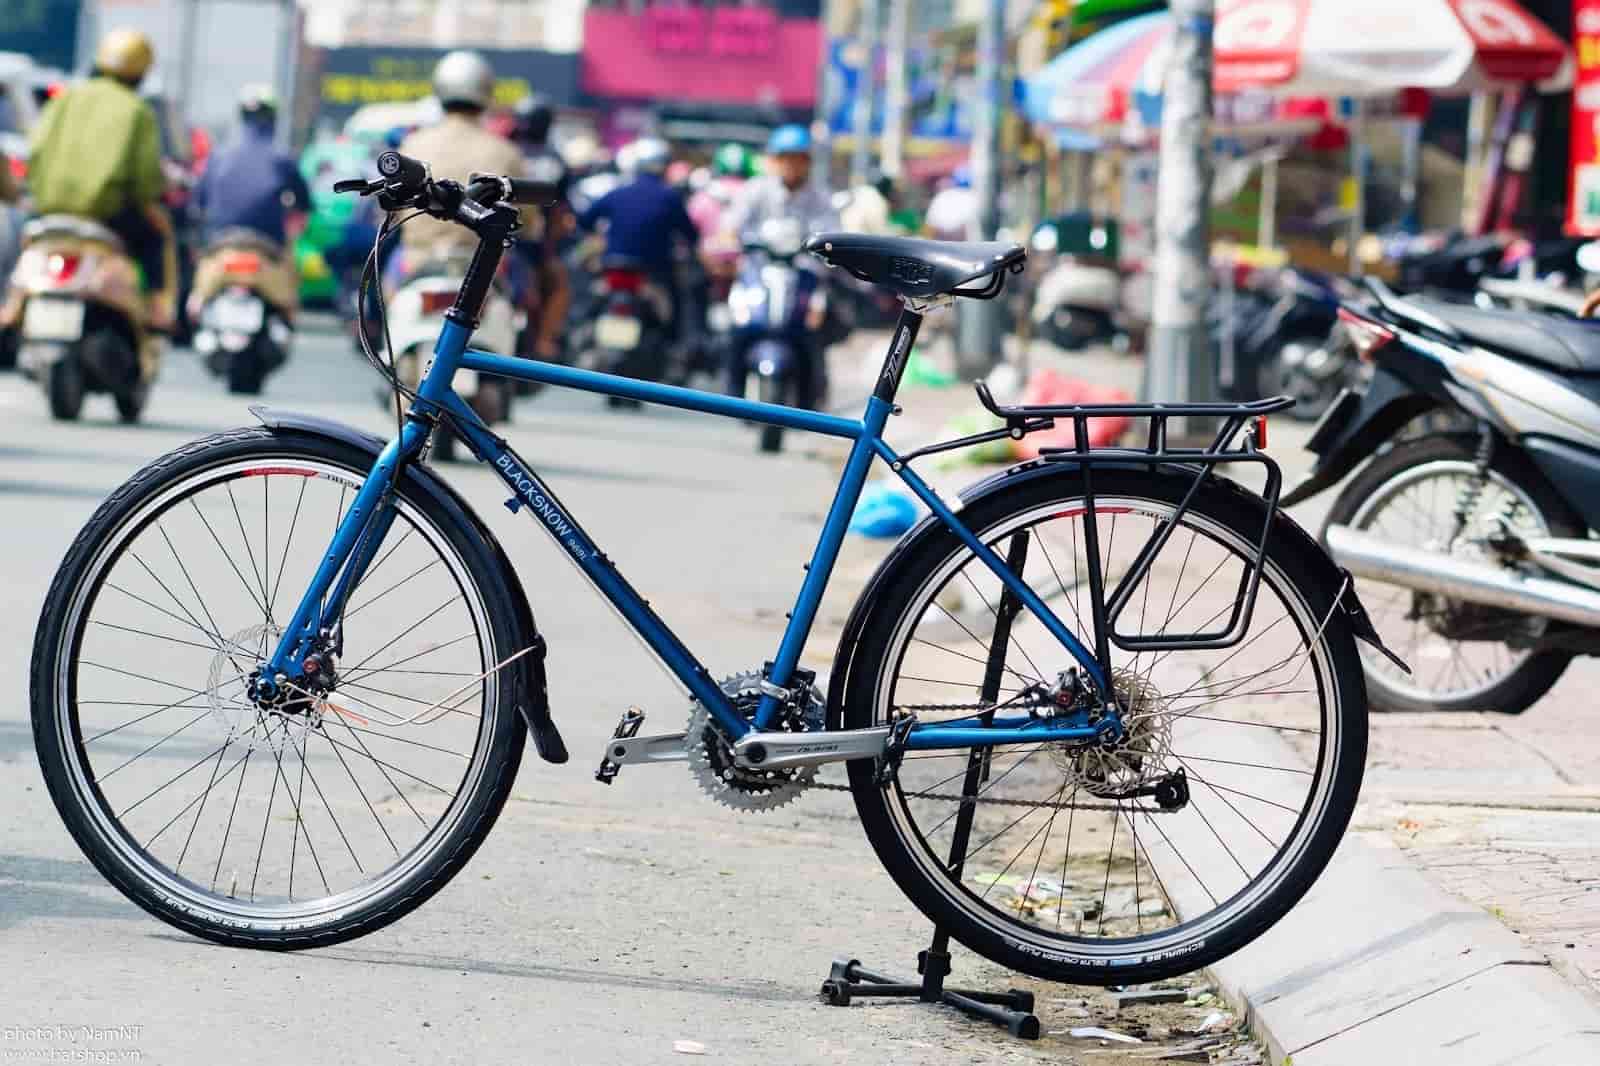  Xe đạp thể thao cũ giá rẻ thì có nên mua không?